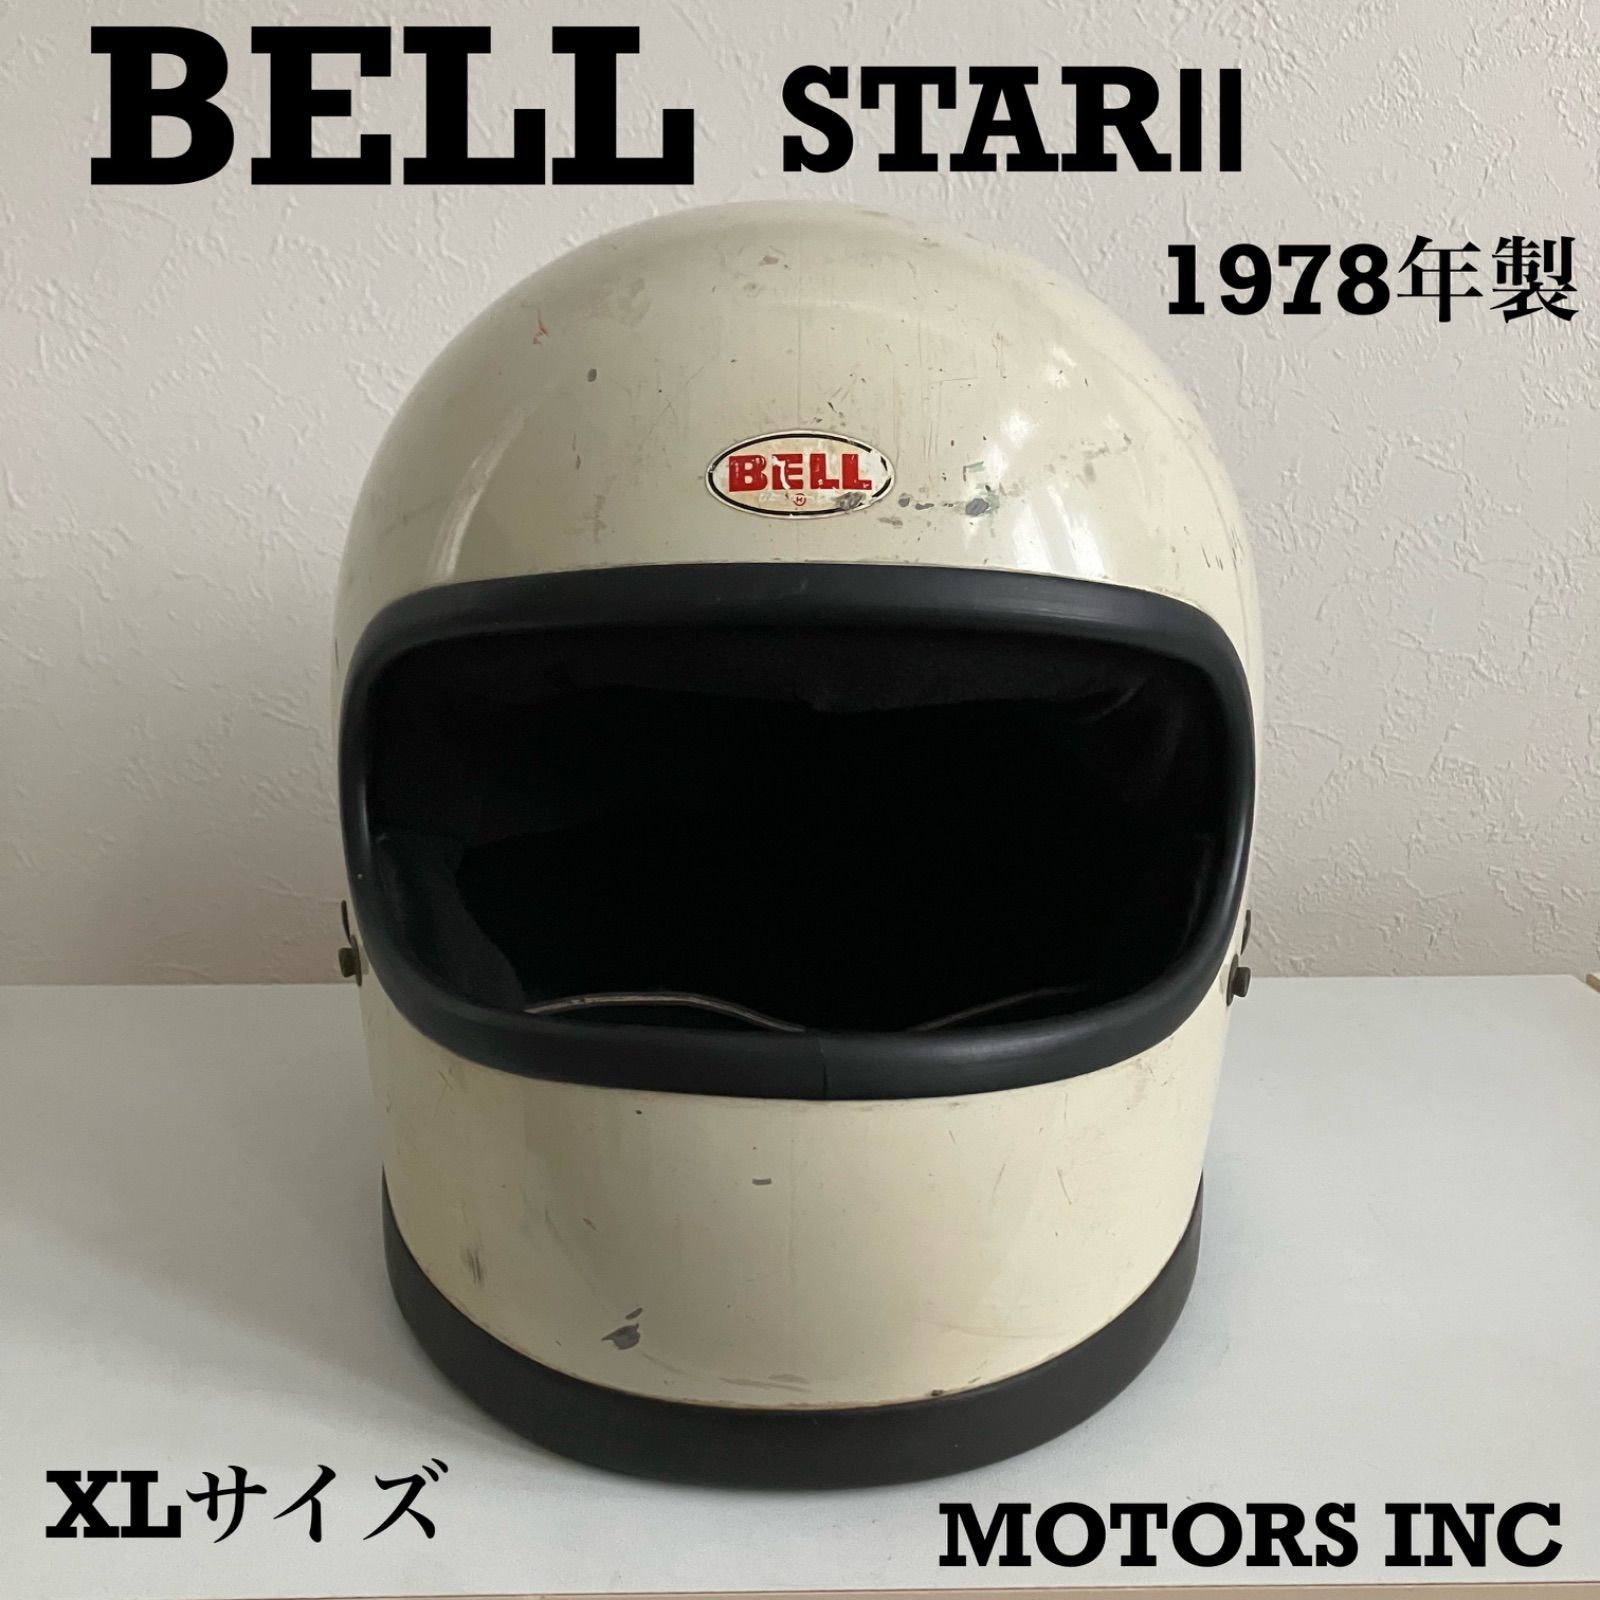 ヴィンテージ復刻 BELL STAR II ビンテージヘルメット フルフェイス 通販